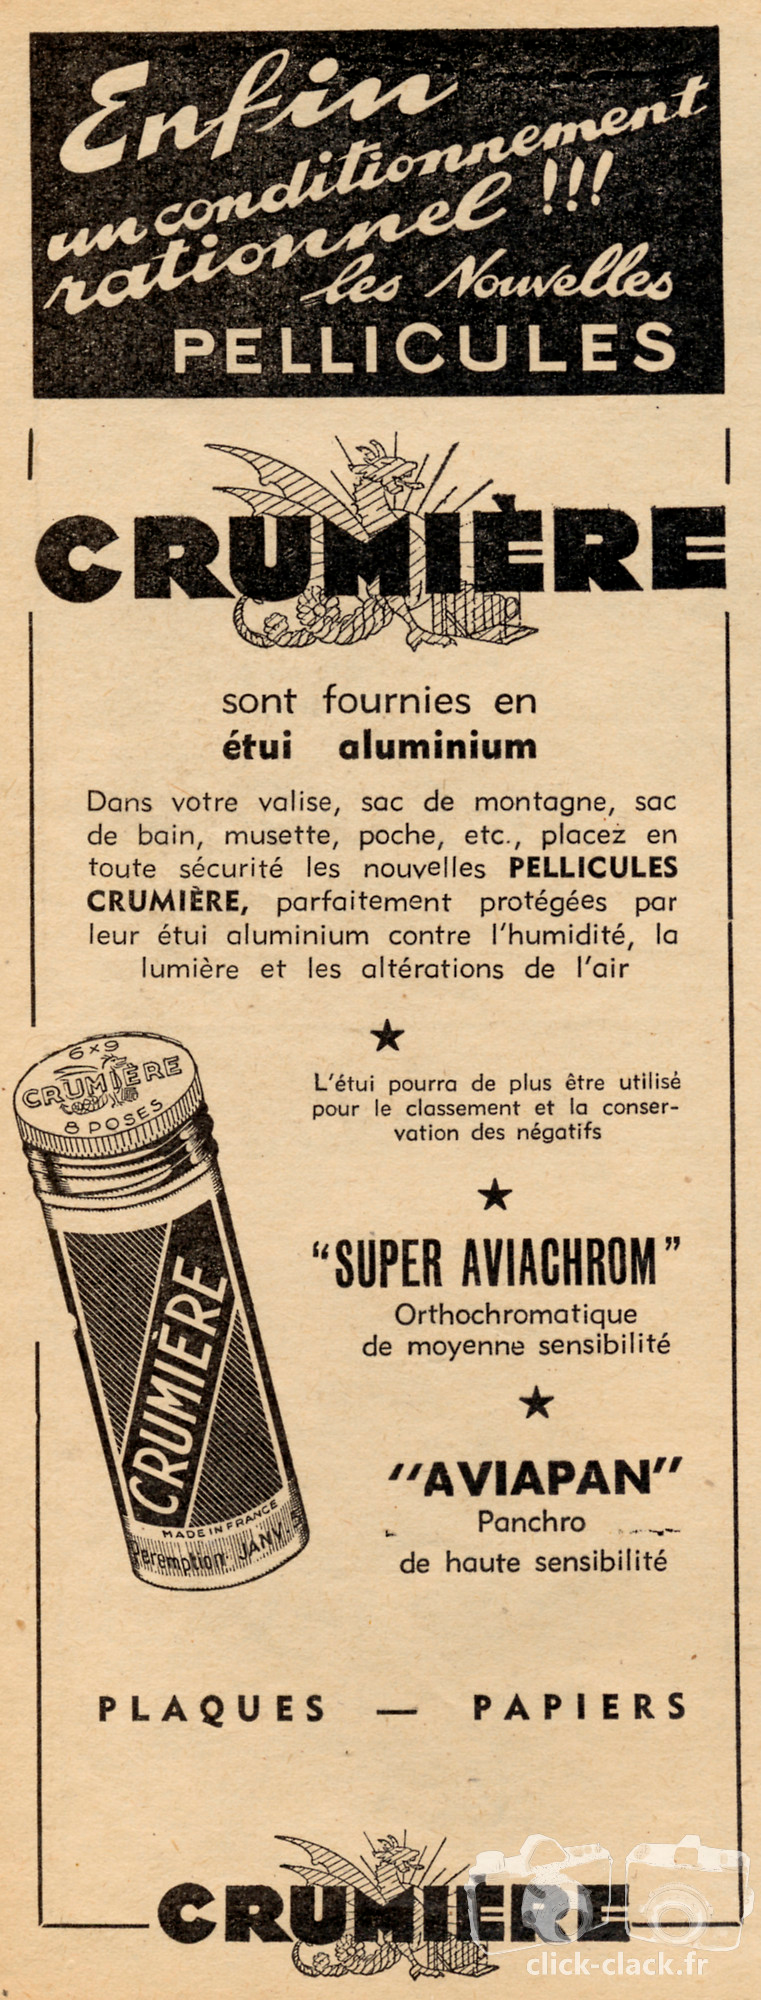 Crumière - Pellicule Super-Aviachrom, Aviapan - 1949